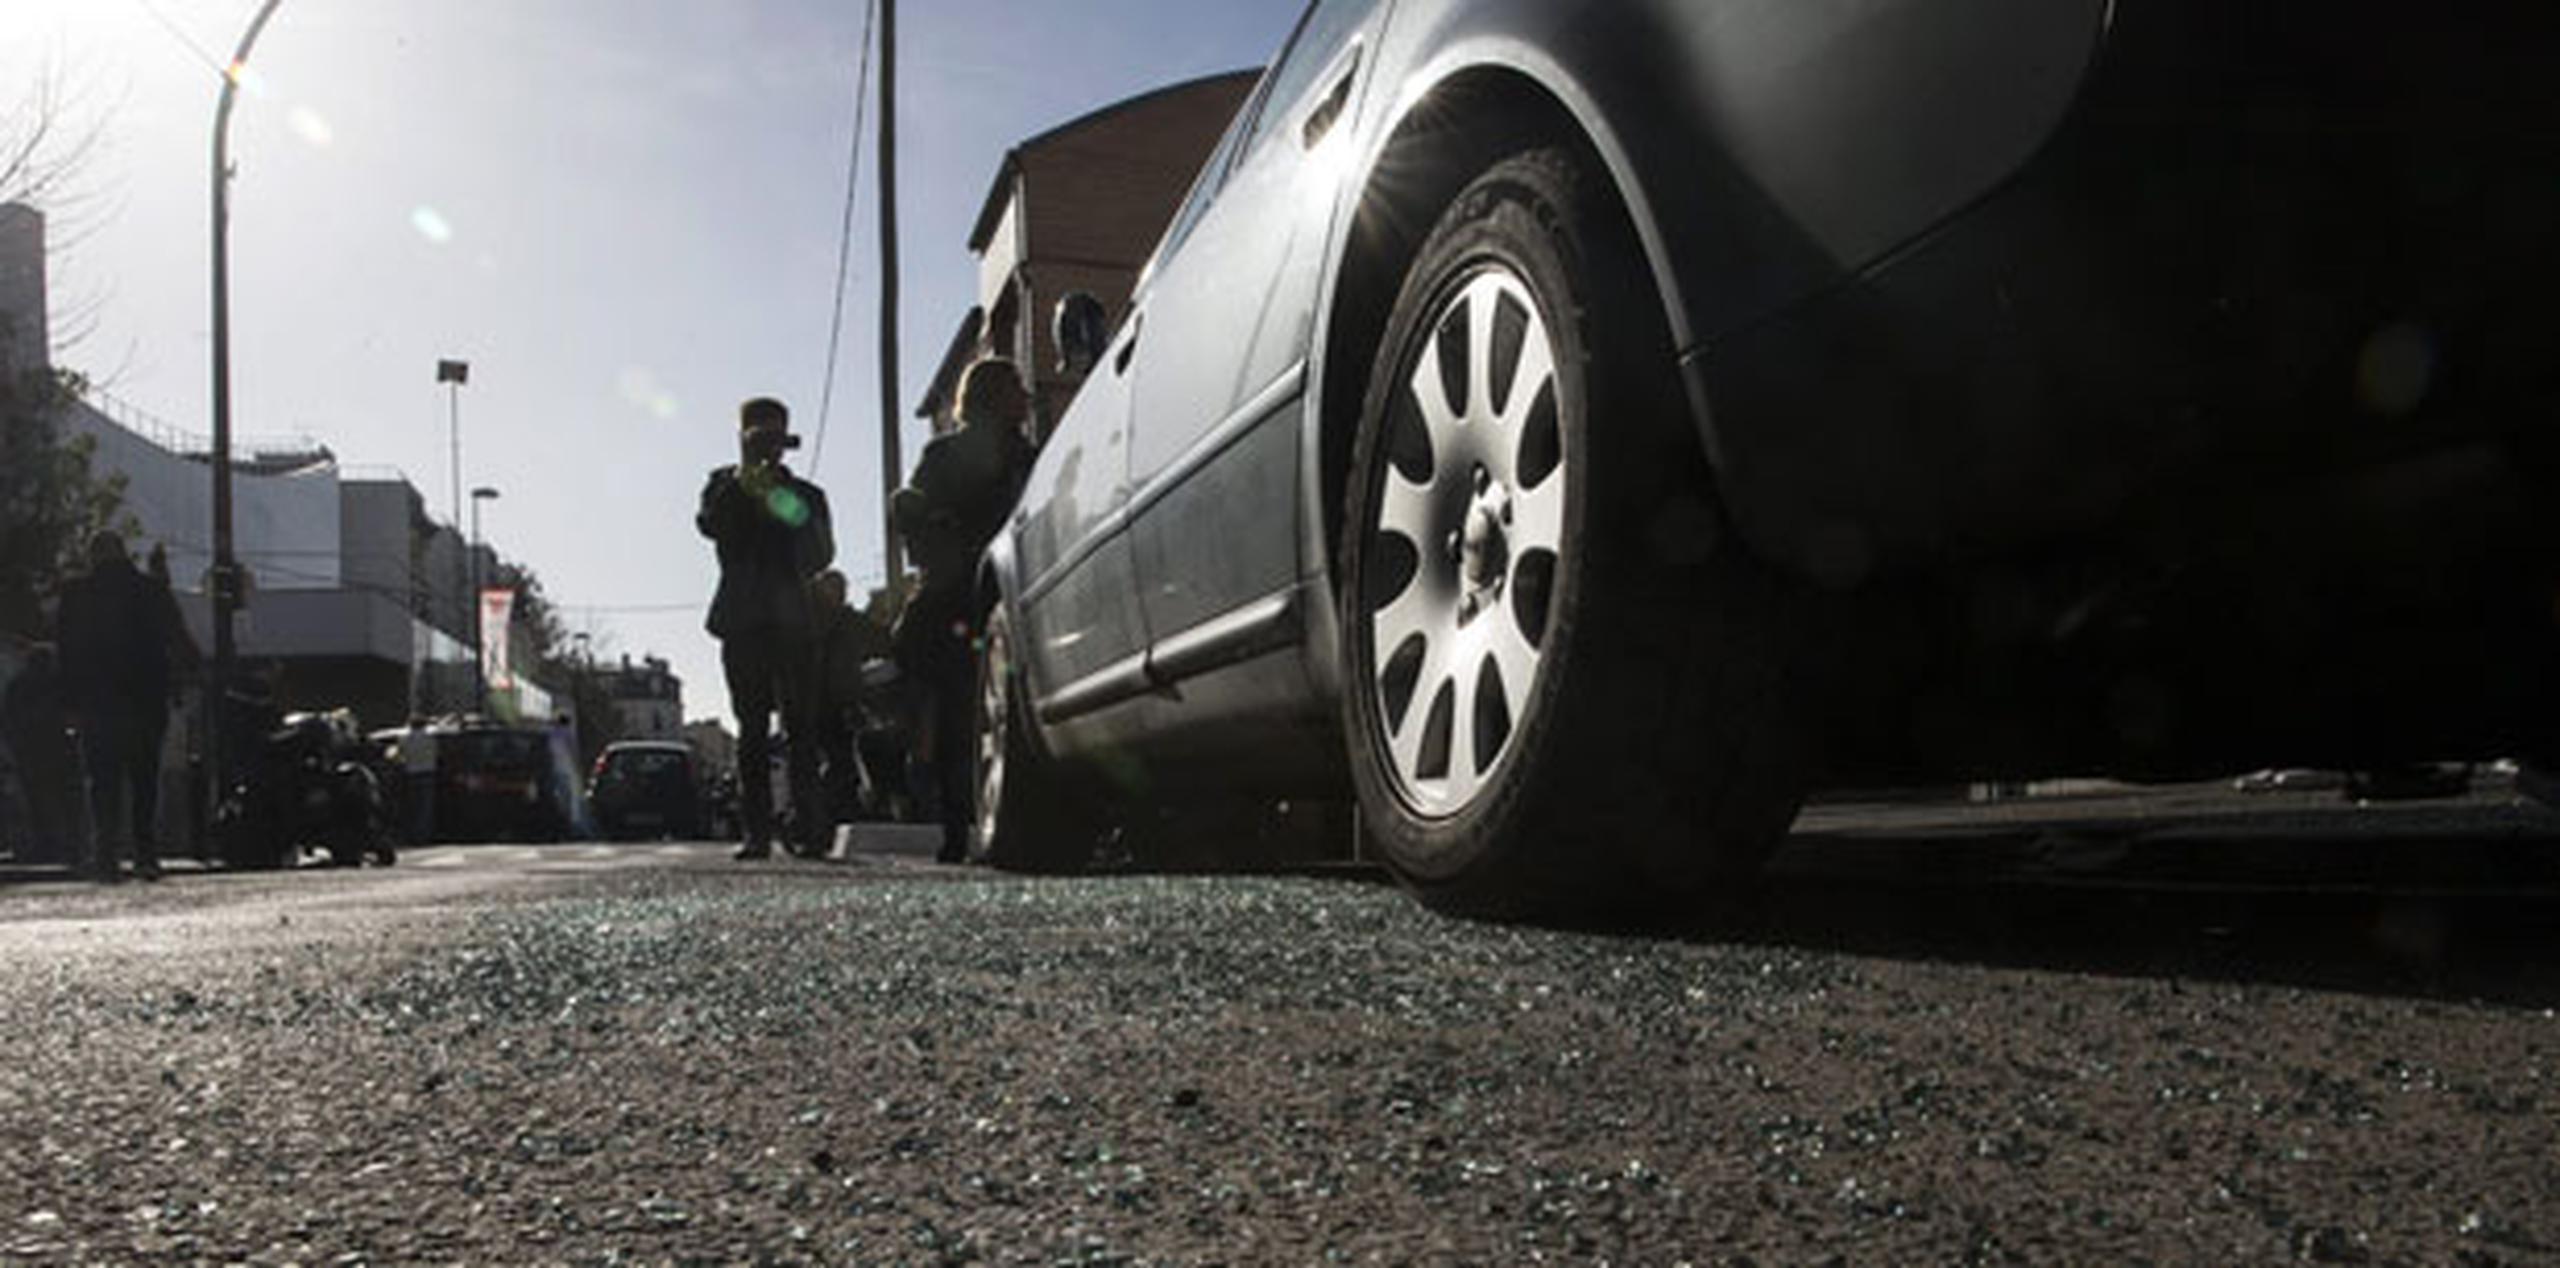 En el suelo, cristales rotos del coche que se sospecha fue utilizado por el tercer grupo terrorista. El auto fue encontrado ayer alrededor de la medianoche en Montreuil en el este de París, Francia, con varias armas en su interior. (EFE / EPA / ETIENNE LAURENT)